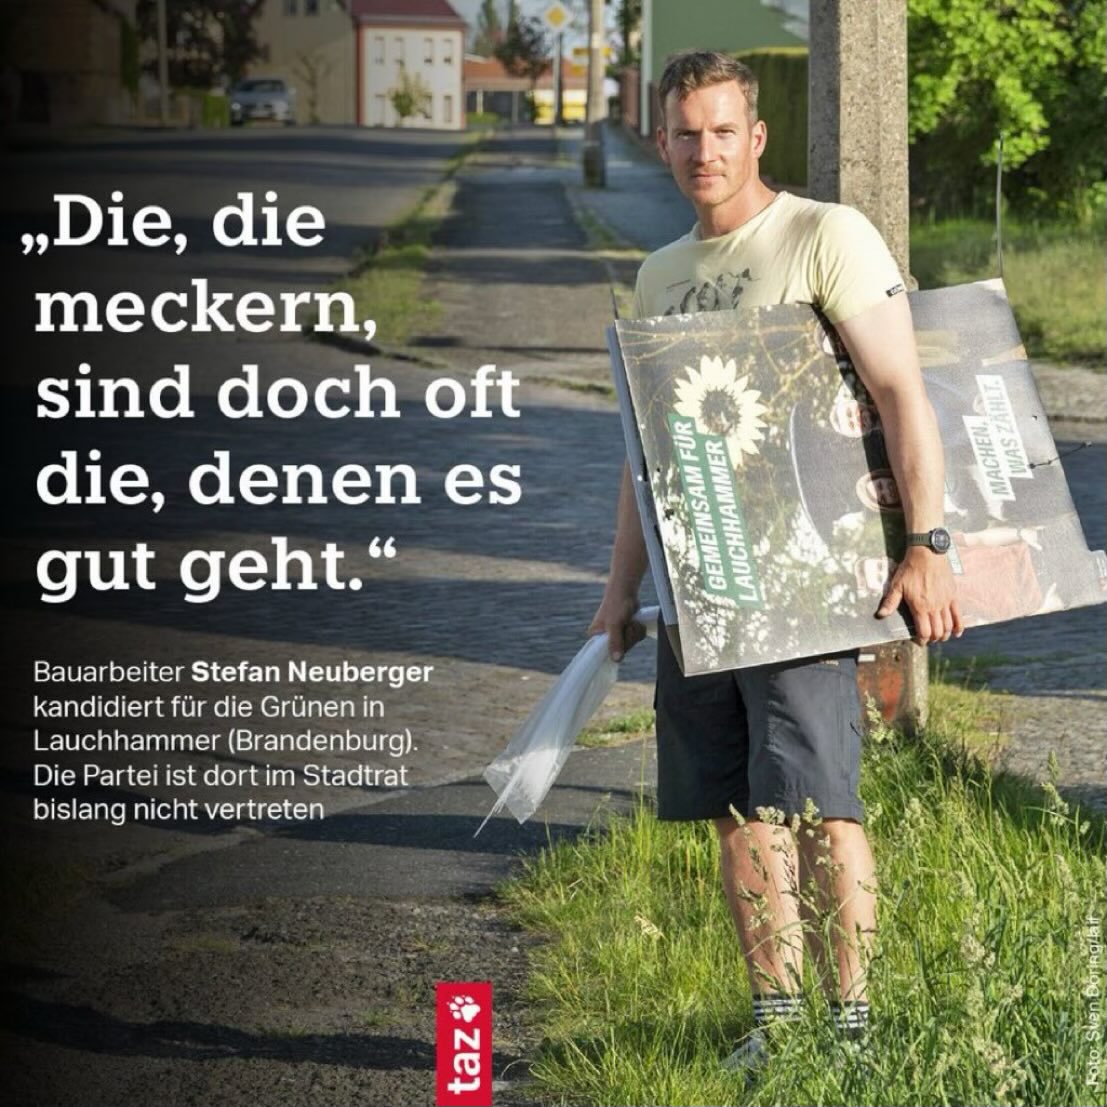 Vorurteil über Grüne: „Alles Akademiker in Großstädten.“ 😳 Auch Grüner: Stefan, Bauarbeiter aus Lauchhammer, Südbrandenburg. 👷 Viel Erfolg, Stefan! 🌻